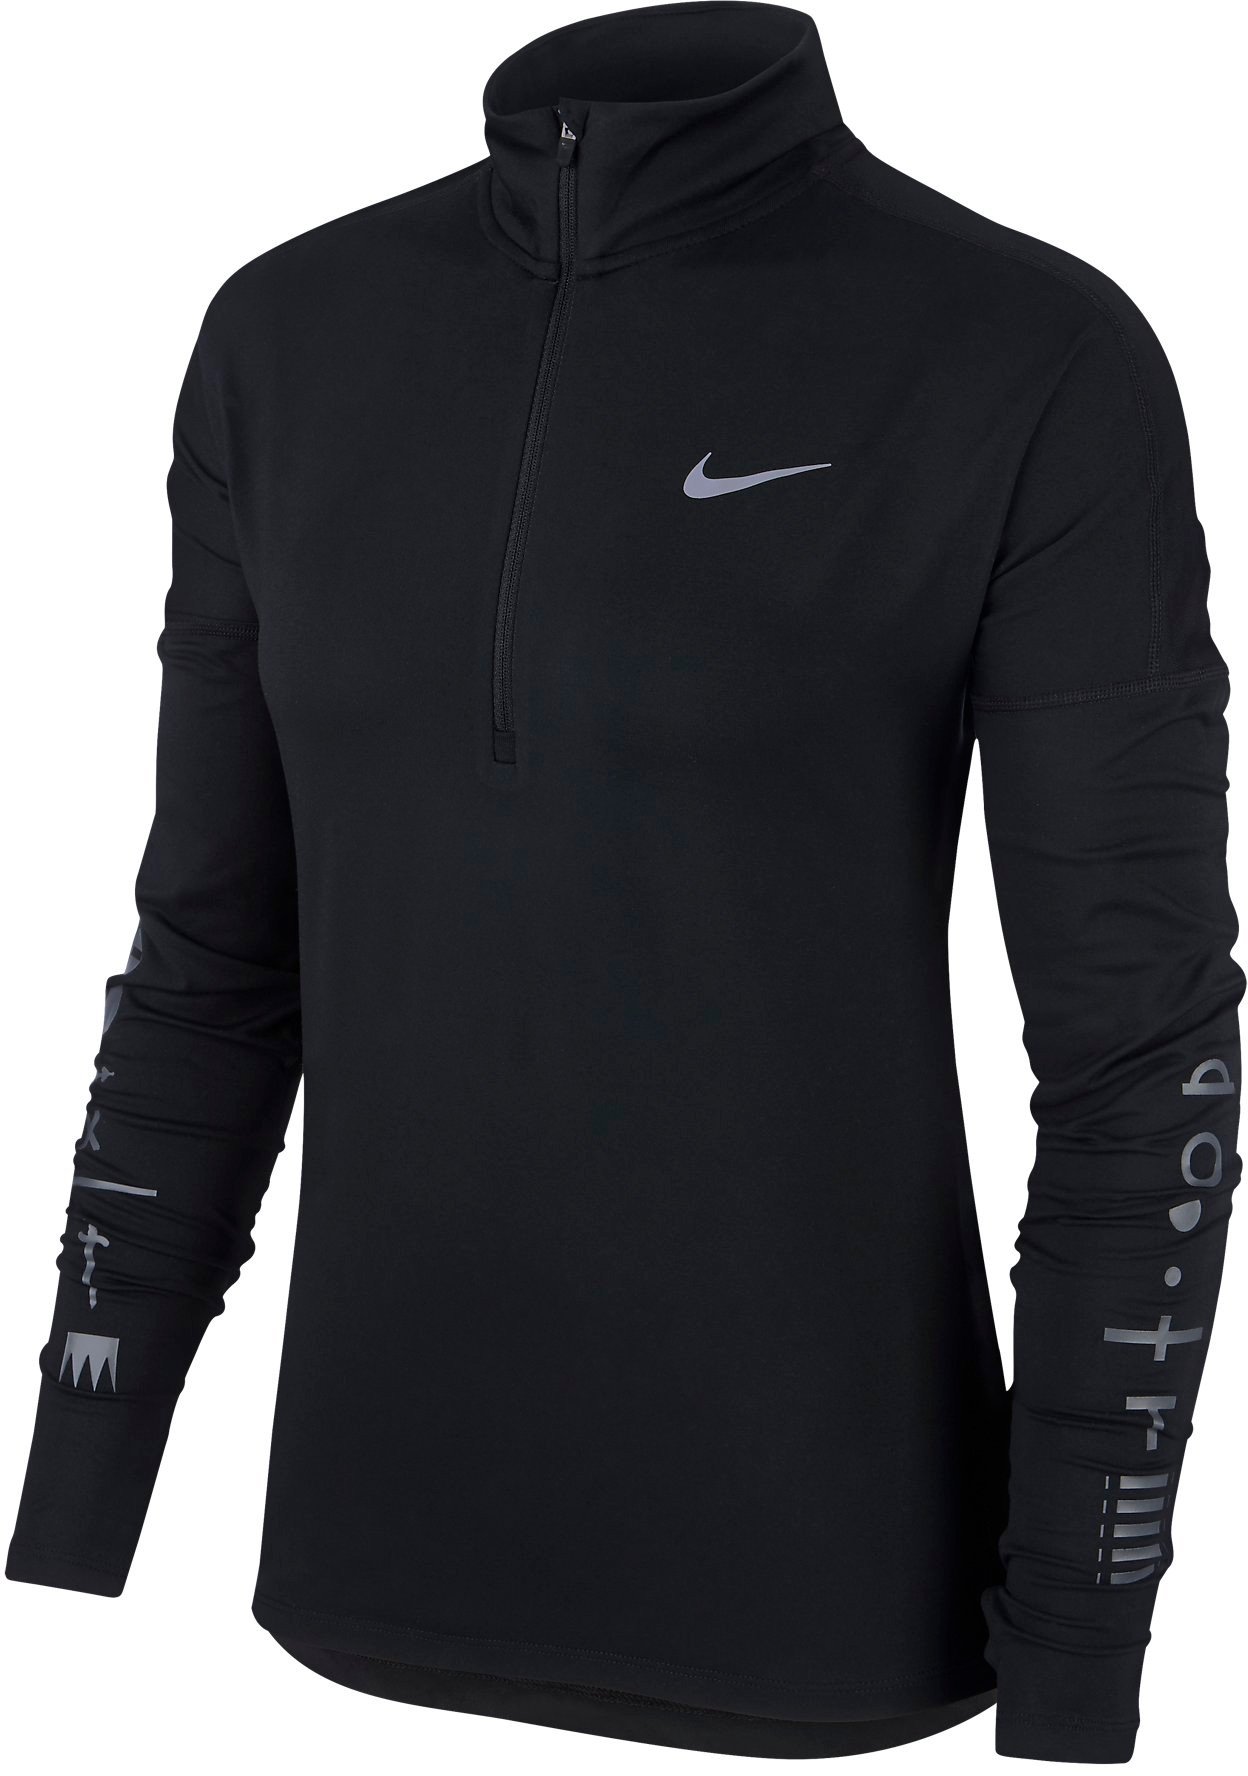 Dámské běžecké tričko s dlouhým rukávem Nike Dry Element London 2018